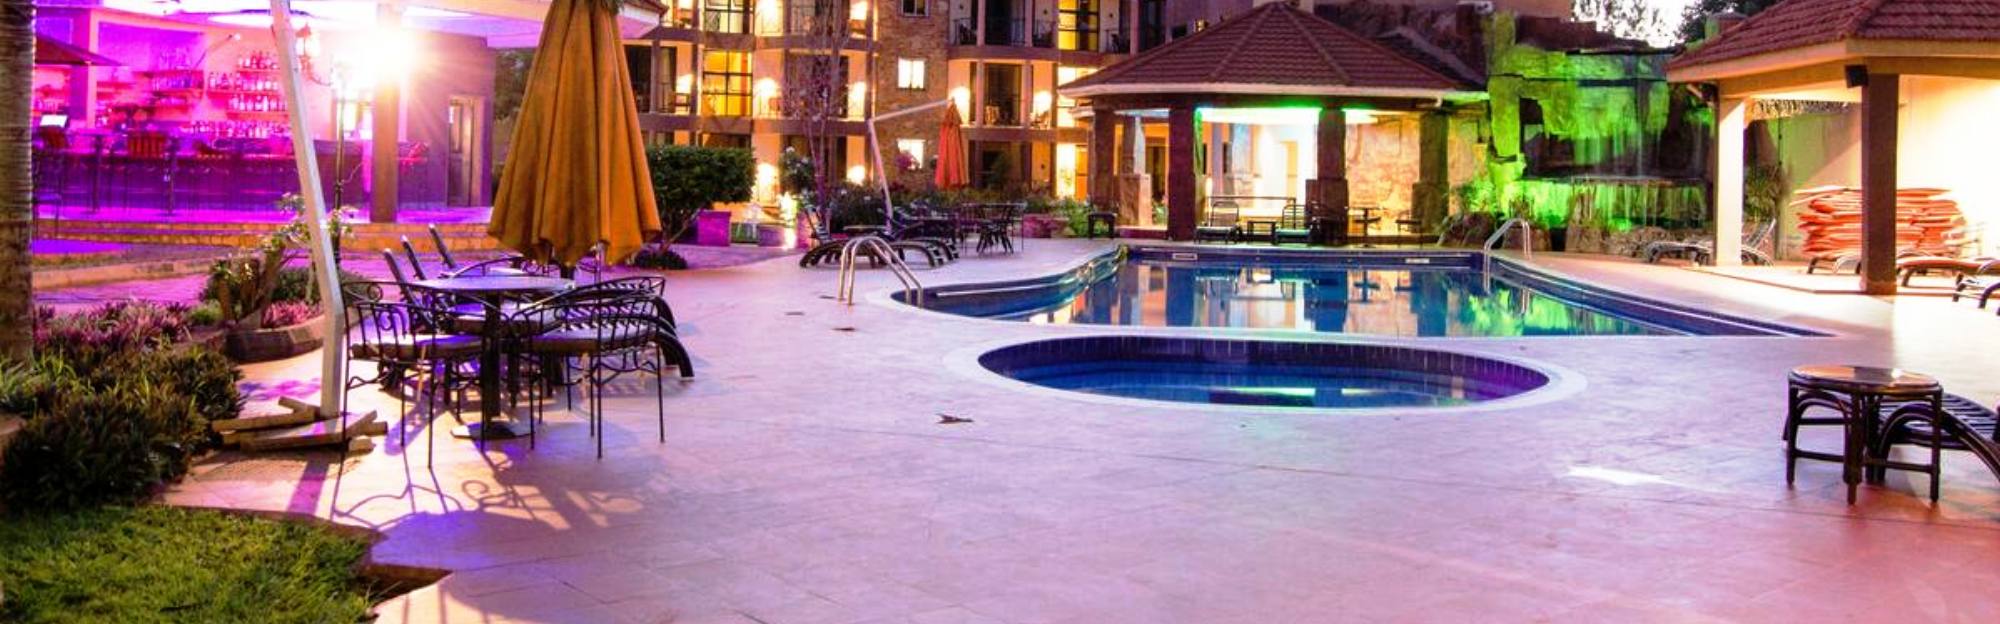 Nile Village Hotel & Spa Conferences & Weddings